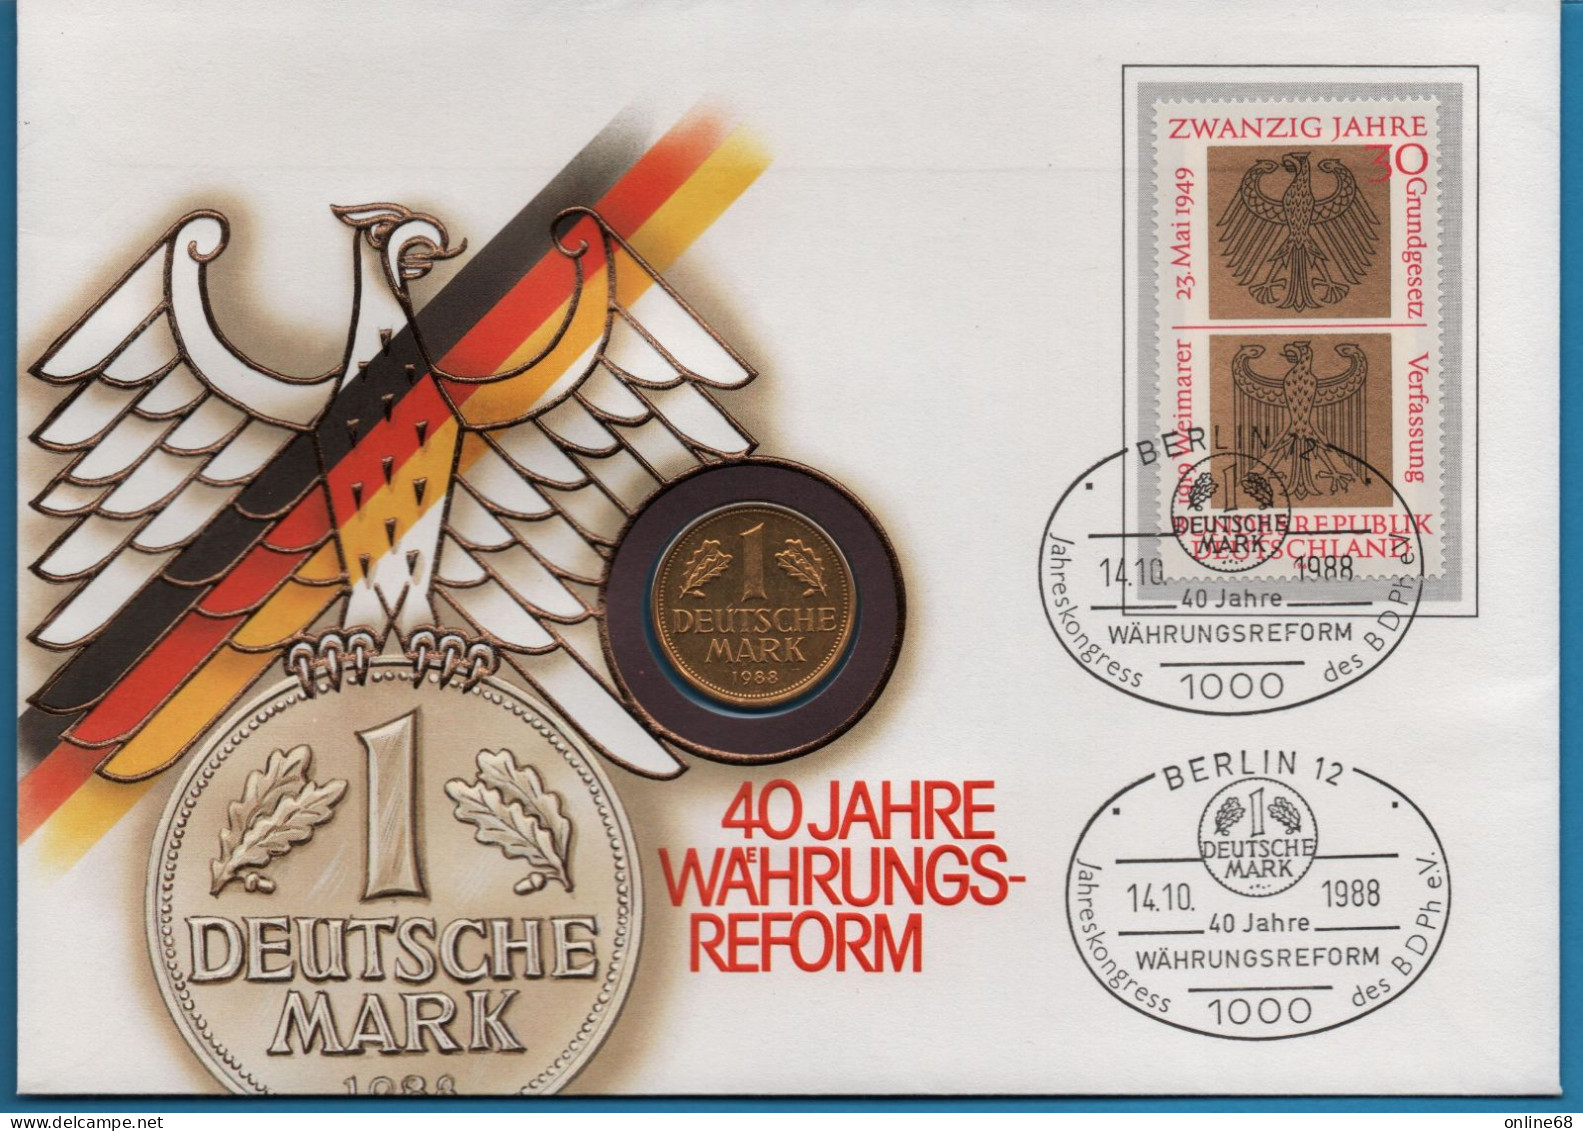 DEUTSCHLAND GERMANY NUMISLETTER 1 MARK 1988 D VERGOLDET GOLD PLATED - 1 Mark